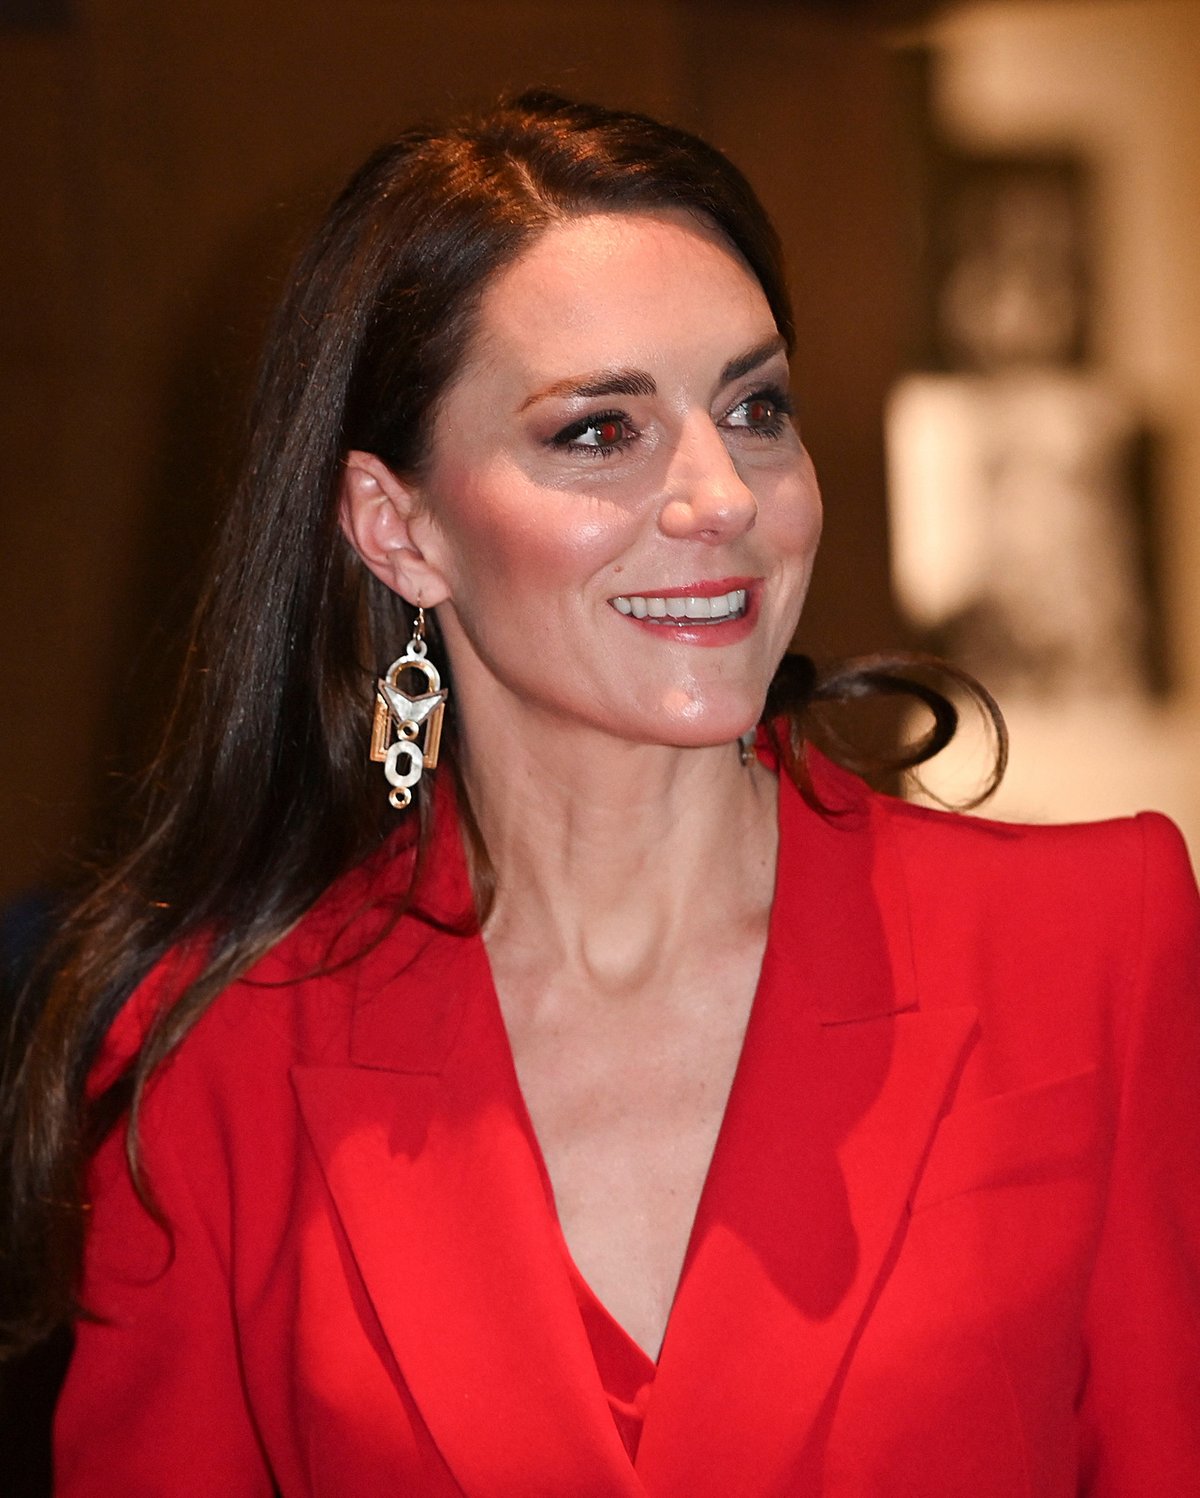 Náušnice Kate Middletonové pocházely od londýnské designérky